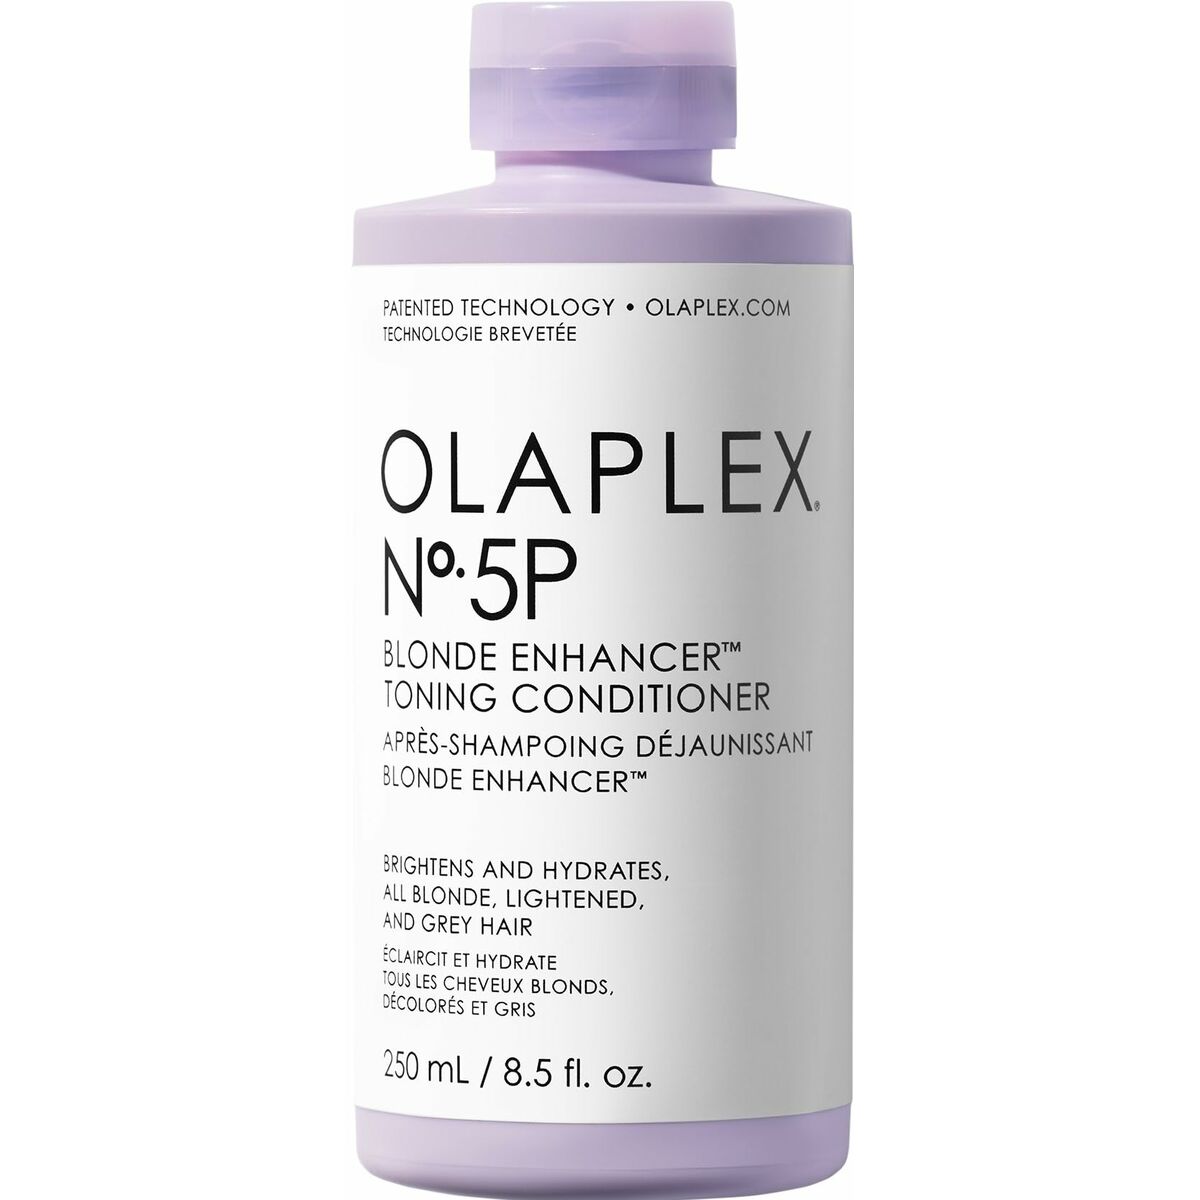 Balsam til blond eller gråt hår Olaplex Blonde Enhancer Nº 5P 250 ml